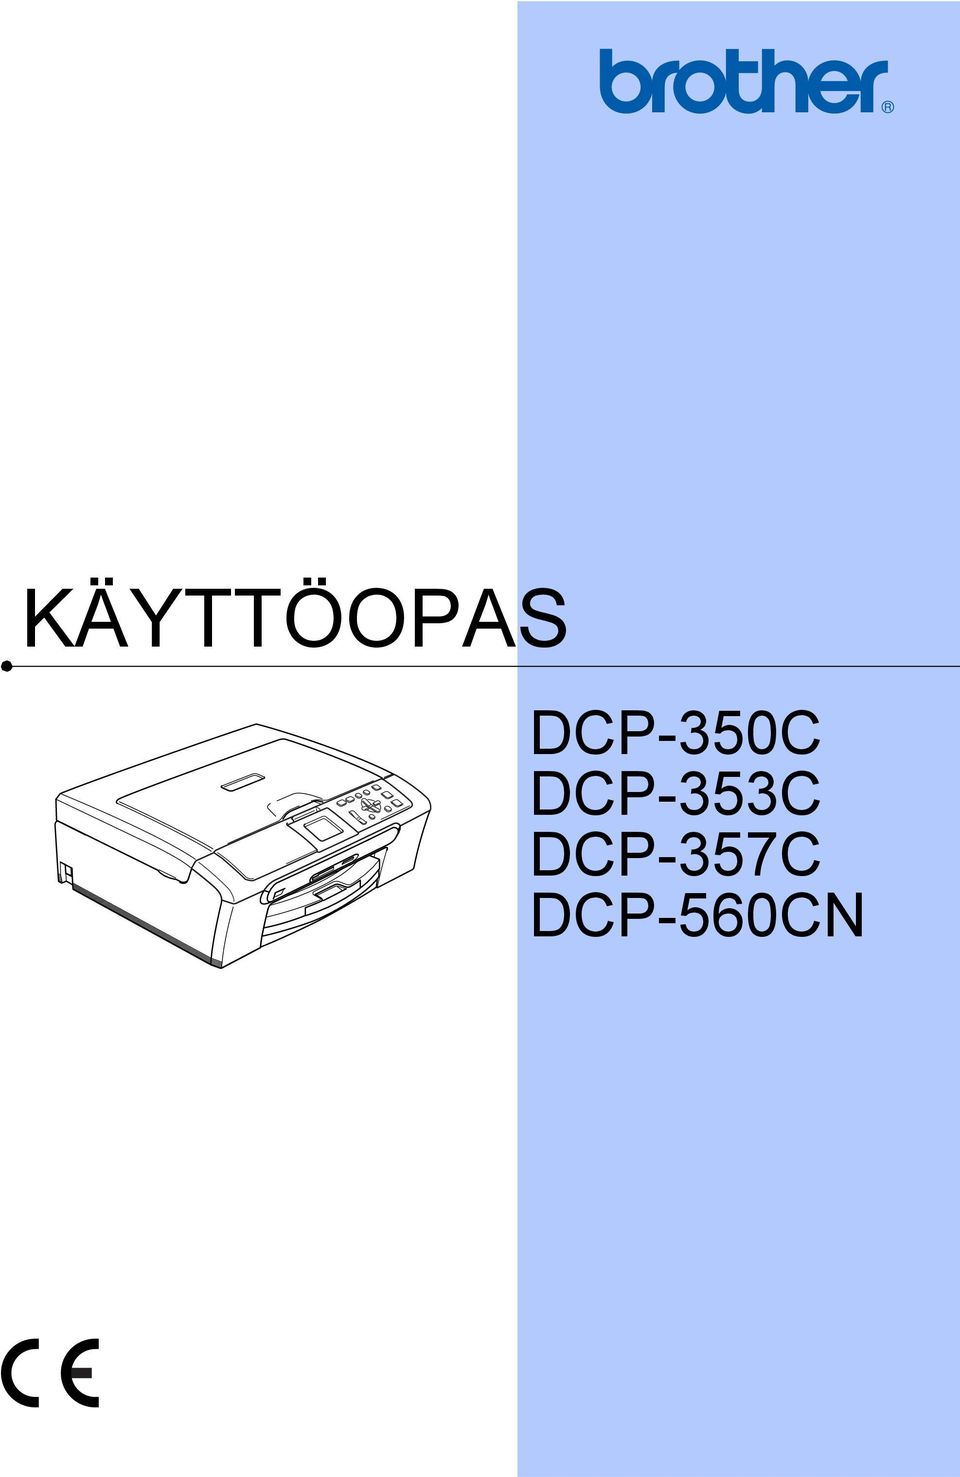 DCP-353C